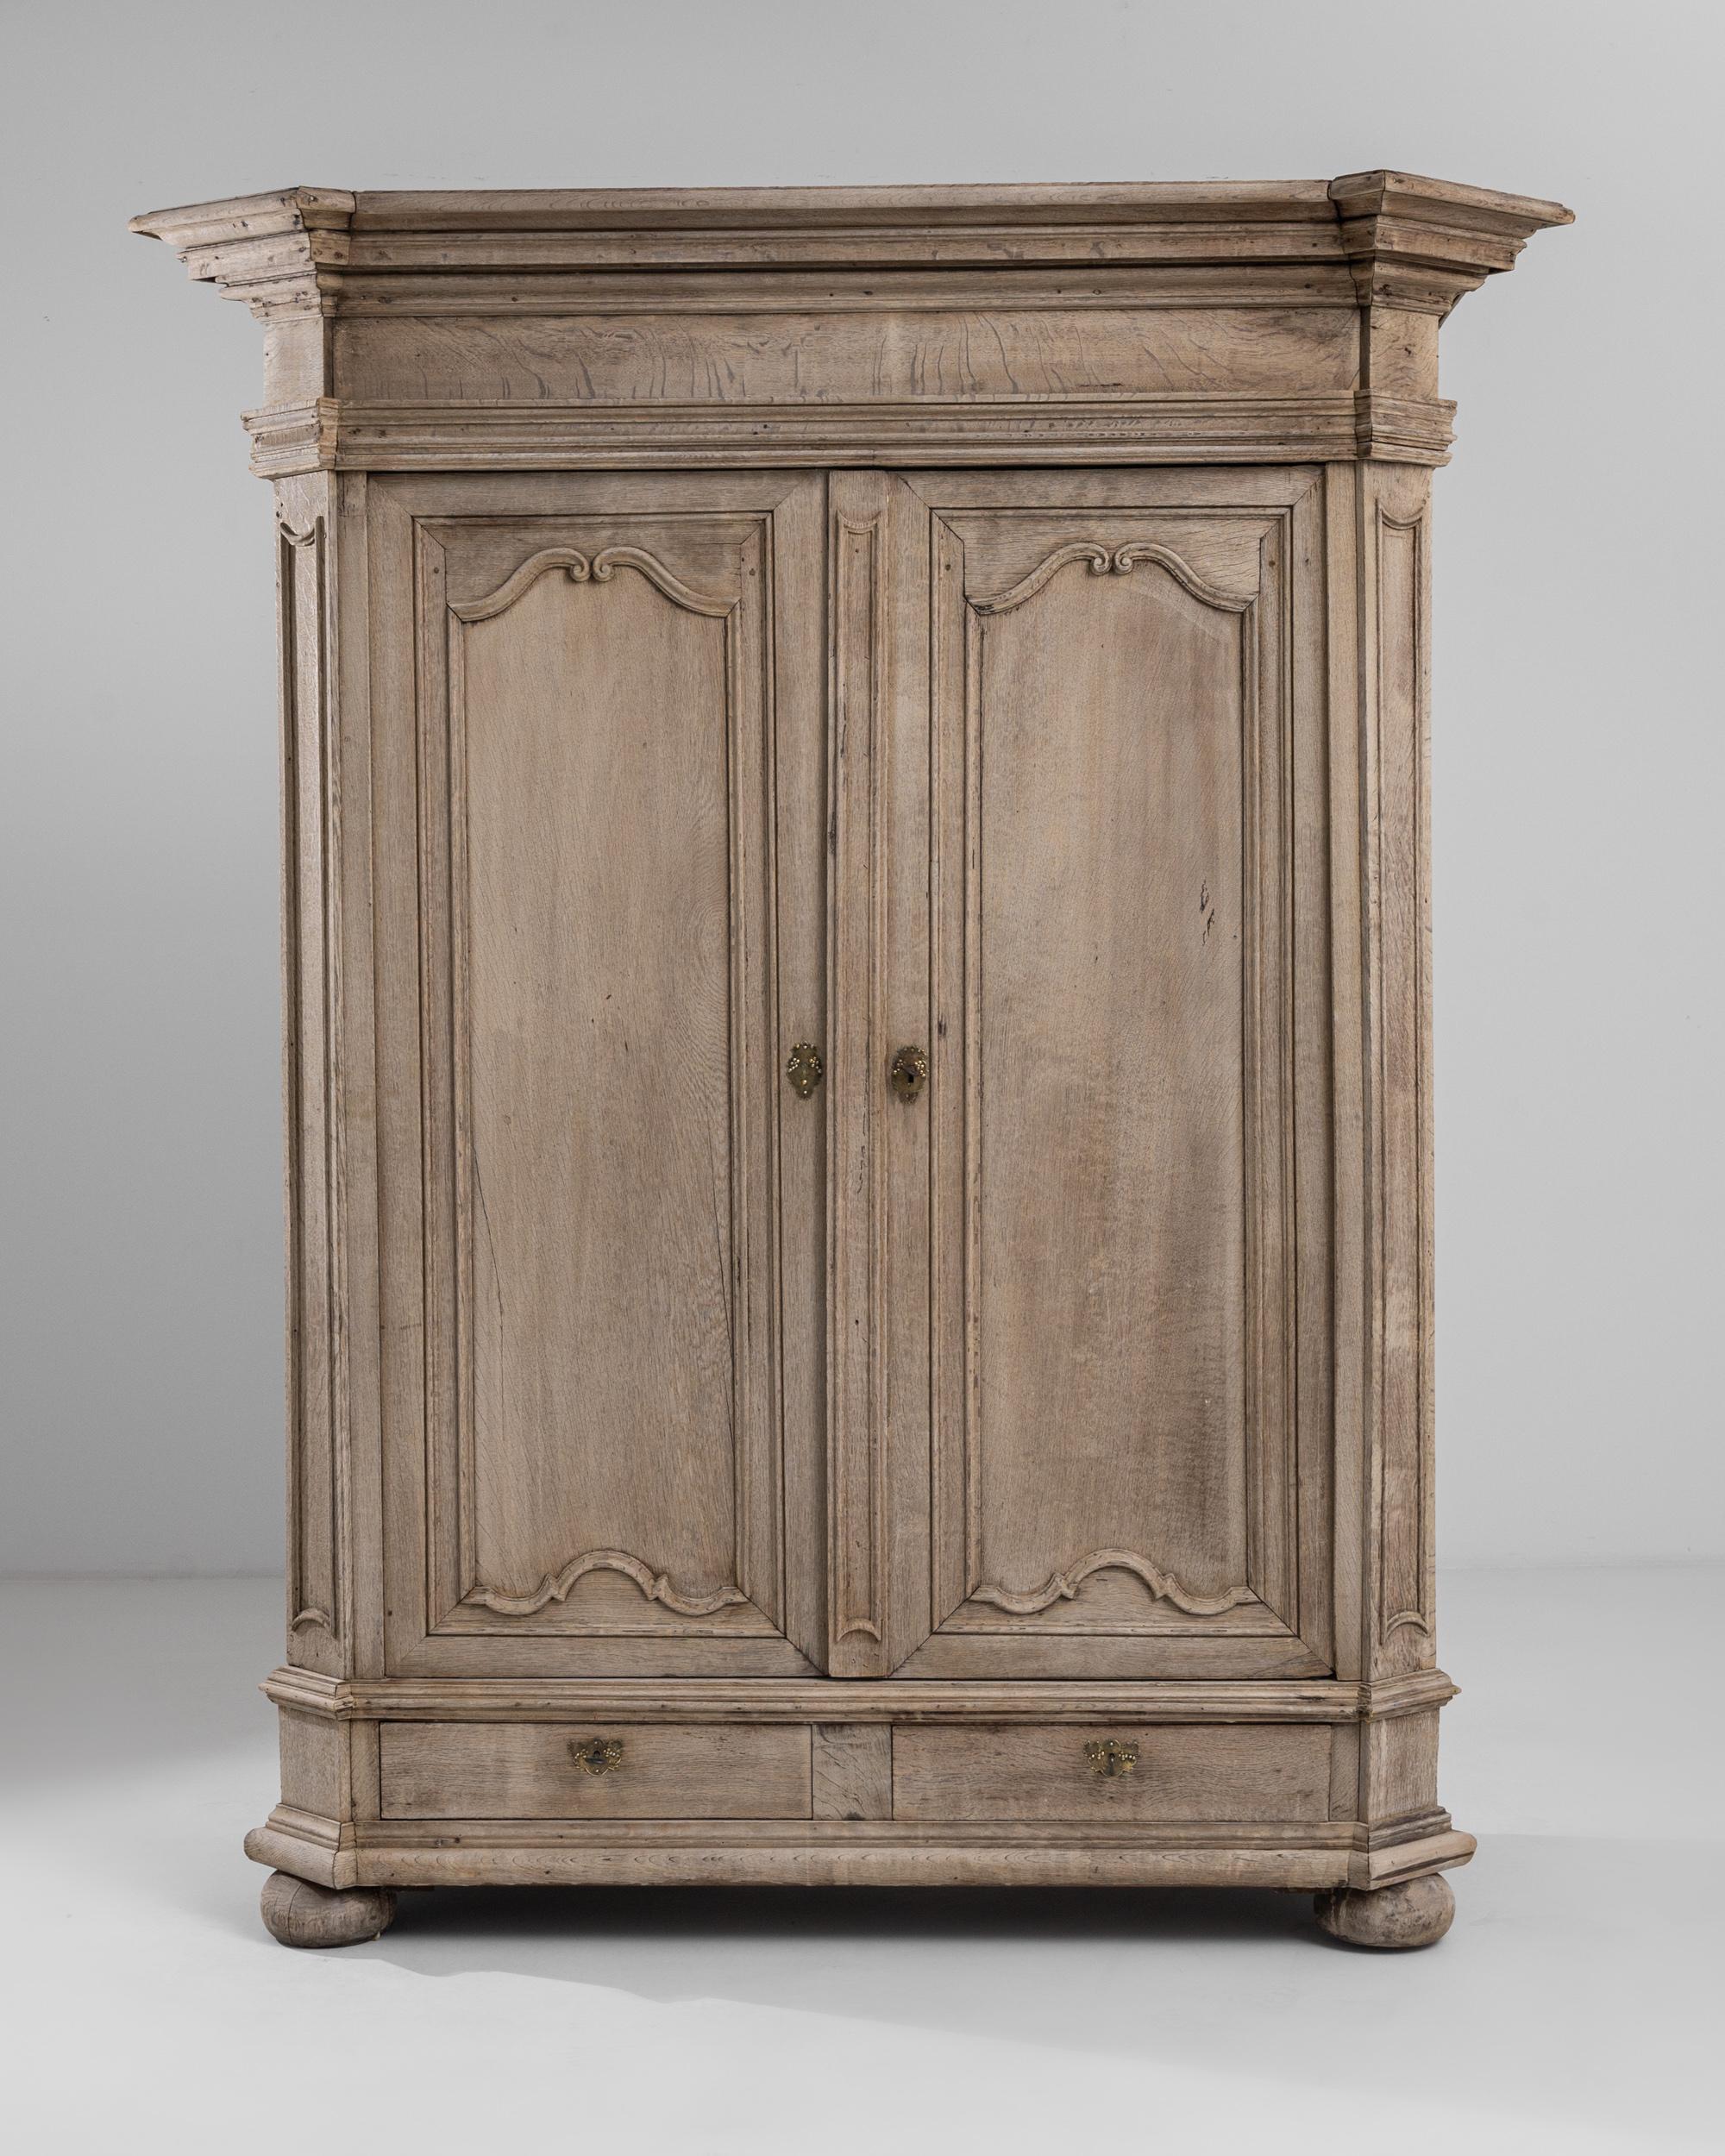 Remontez le temps avec ce superbe meuble en chêne blanchi français des années 1800, véritable chef-d'œuvre d'artisanat et d'élégance. Restaurée avec soin pour honorer ses racines historiques, cette pièce apporte le charme d'un château français dans